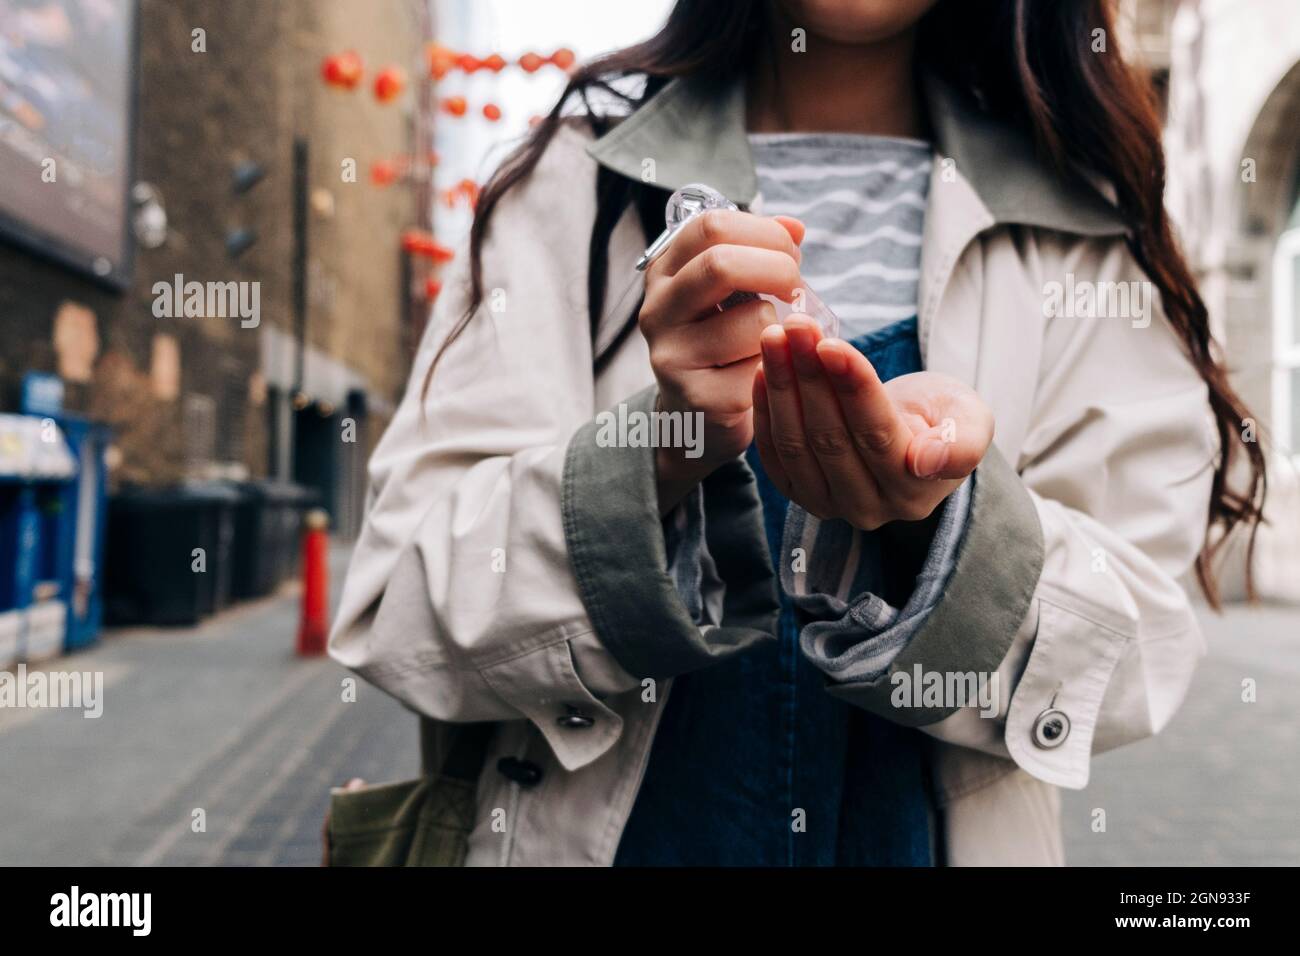 Femme utilisant un désinfectant pour les mains dans la rue Banque D'Images